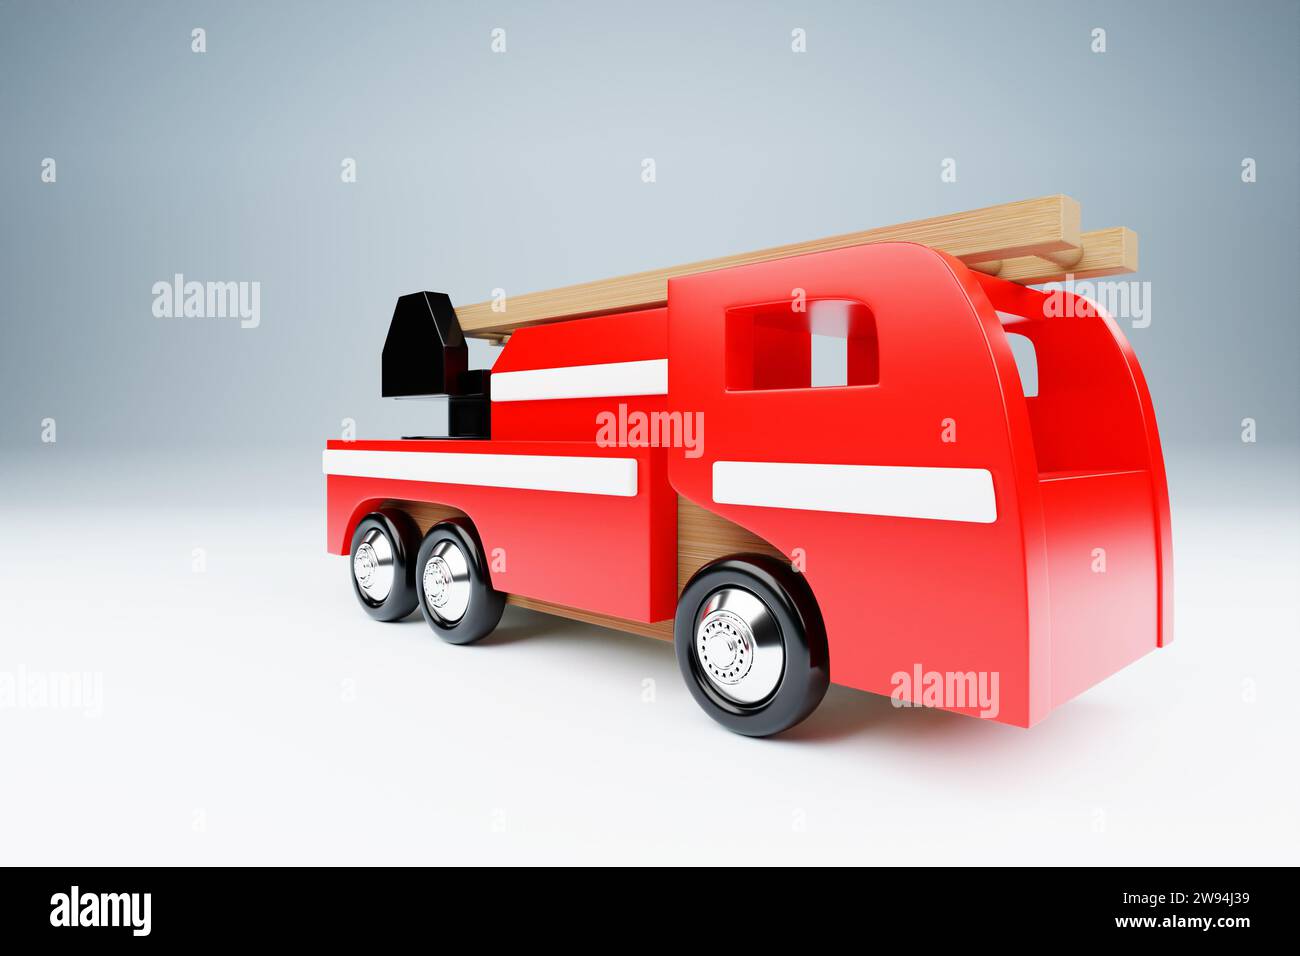 ilustración 3d de un vehículo de emergencia de coche de bombero rojo sobre un fondo blanco Foto de stock